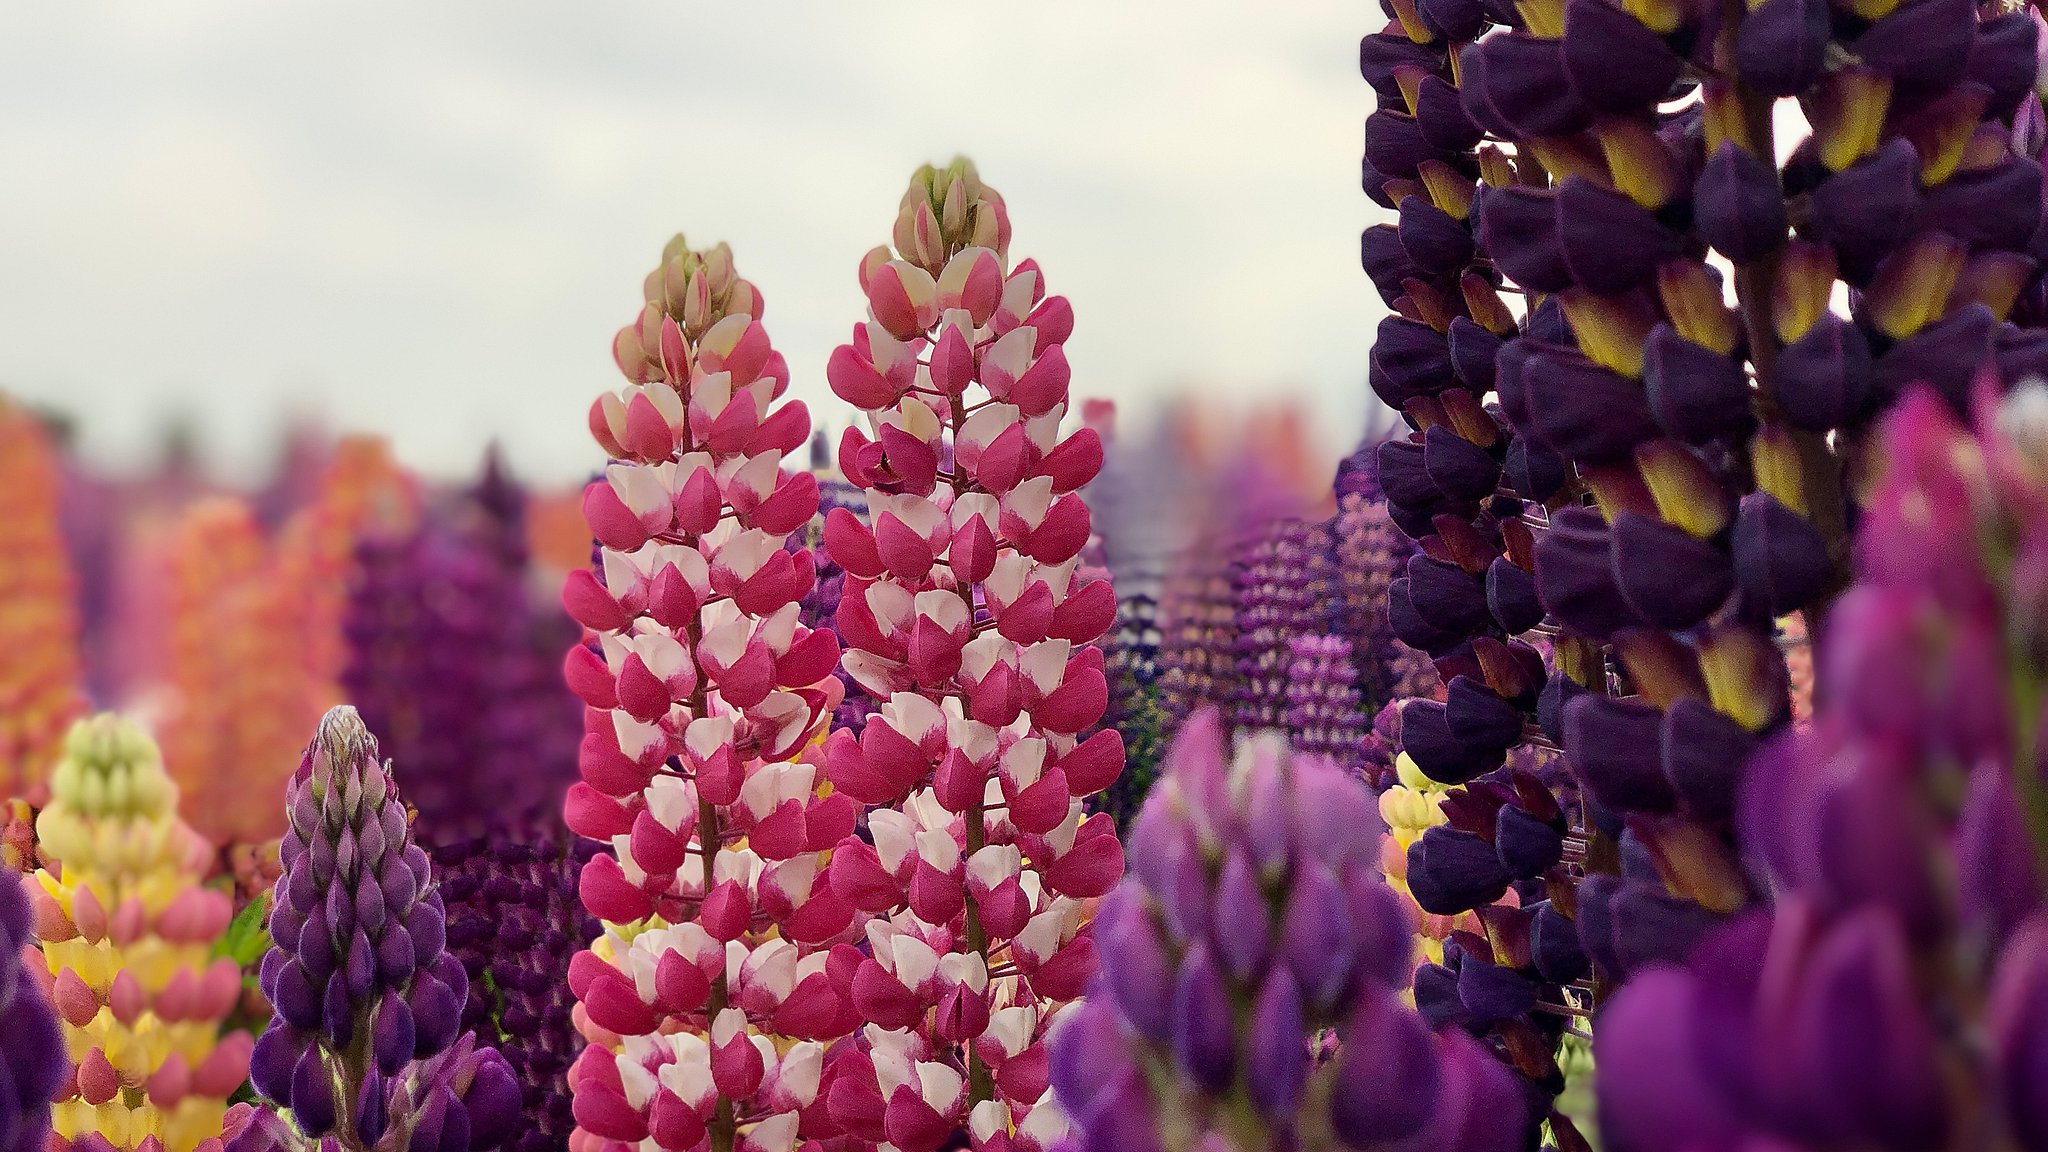 Populær blomst kan naturen – haveejere skal være opmærksomme | TV2 ØST